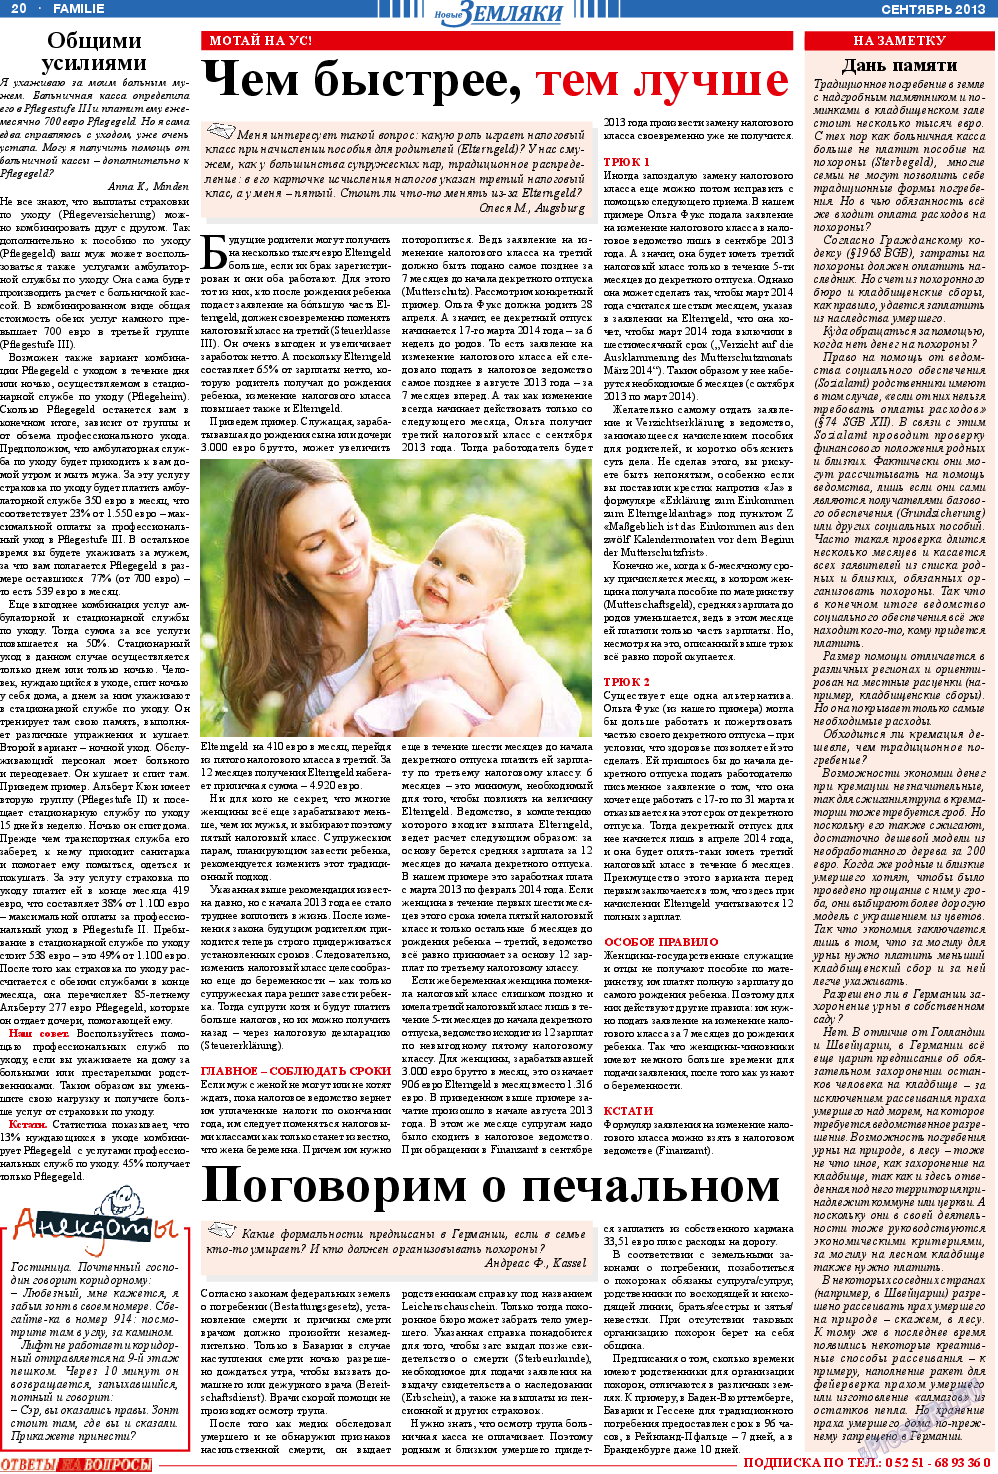 Новые Земляки, газета. 2013 №9 стр.20